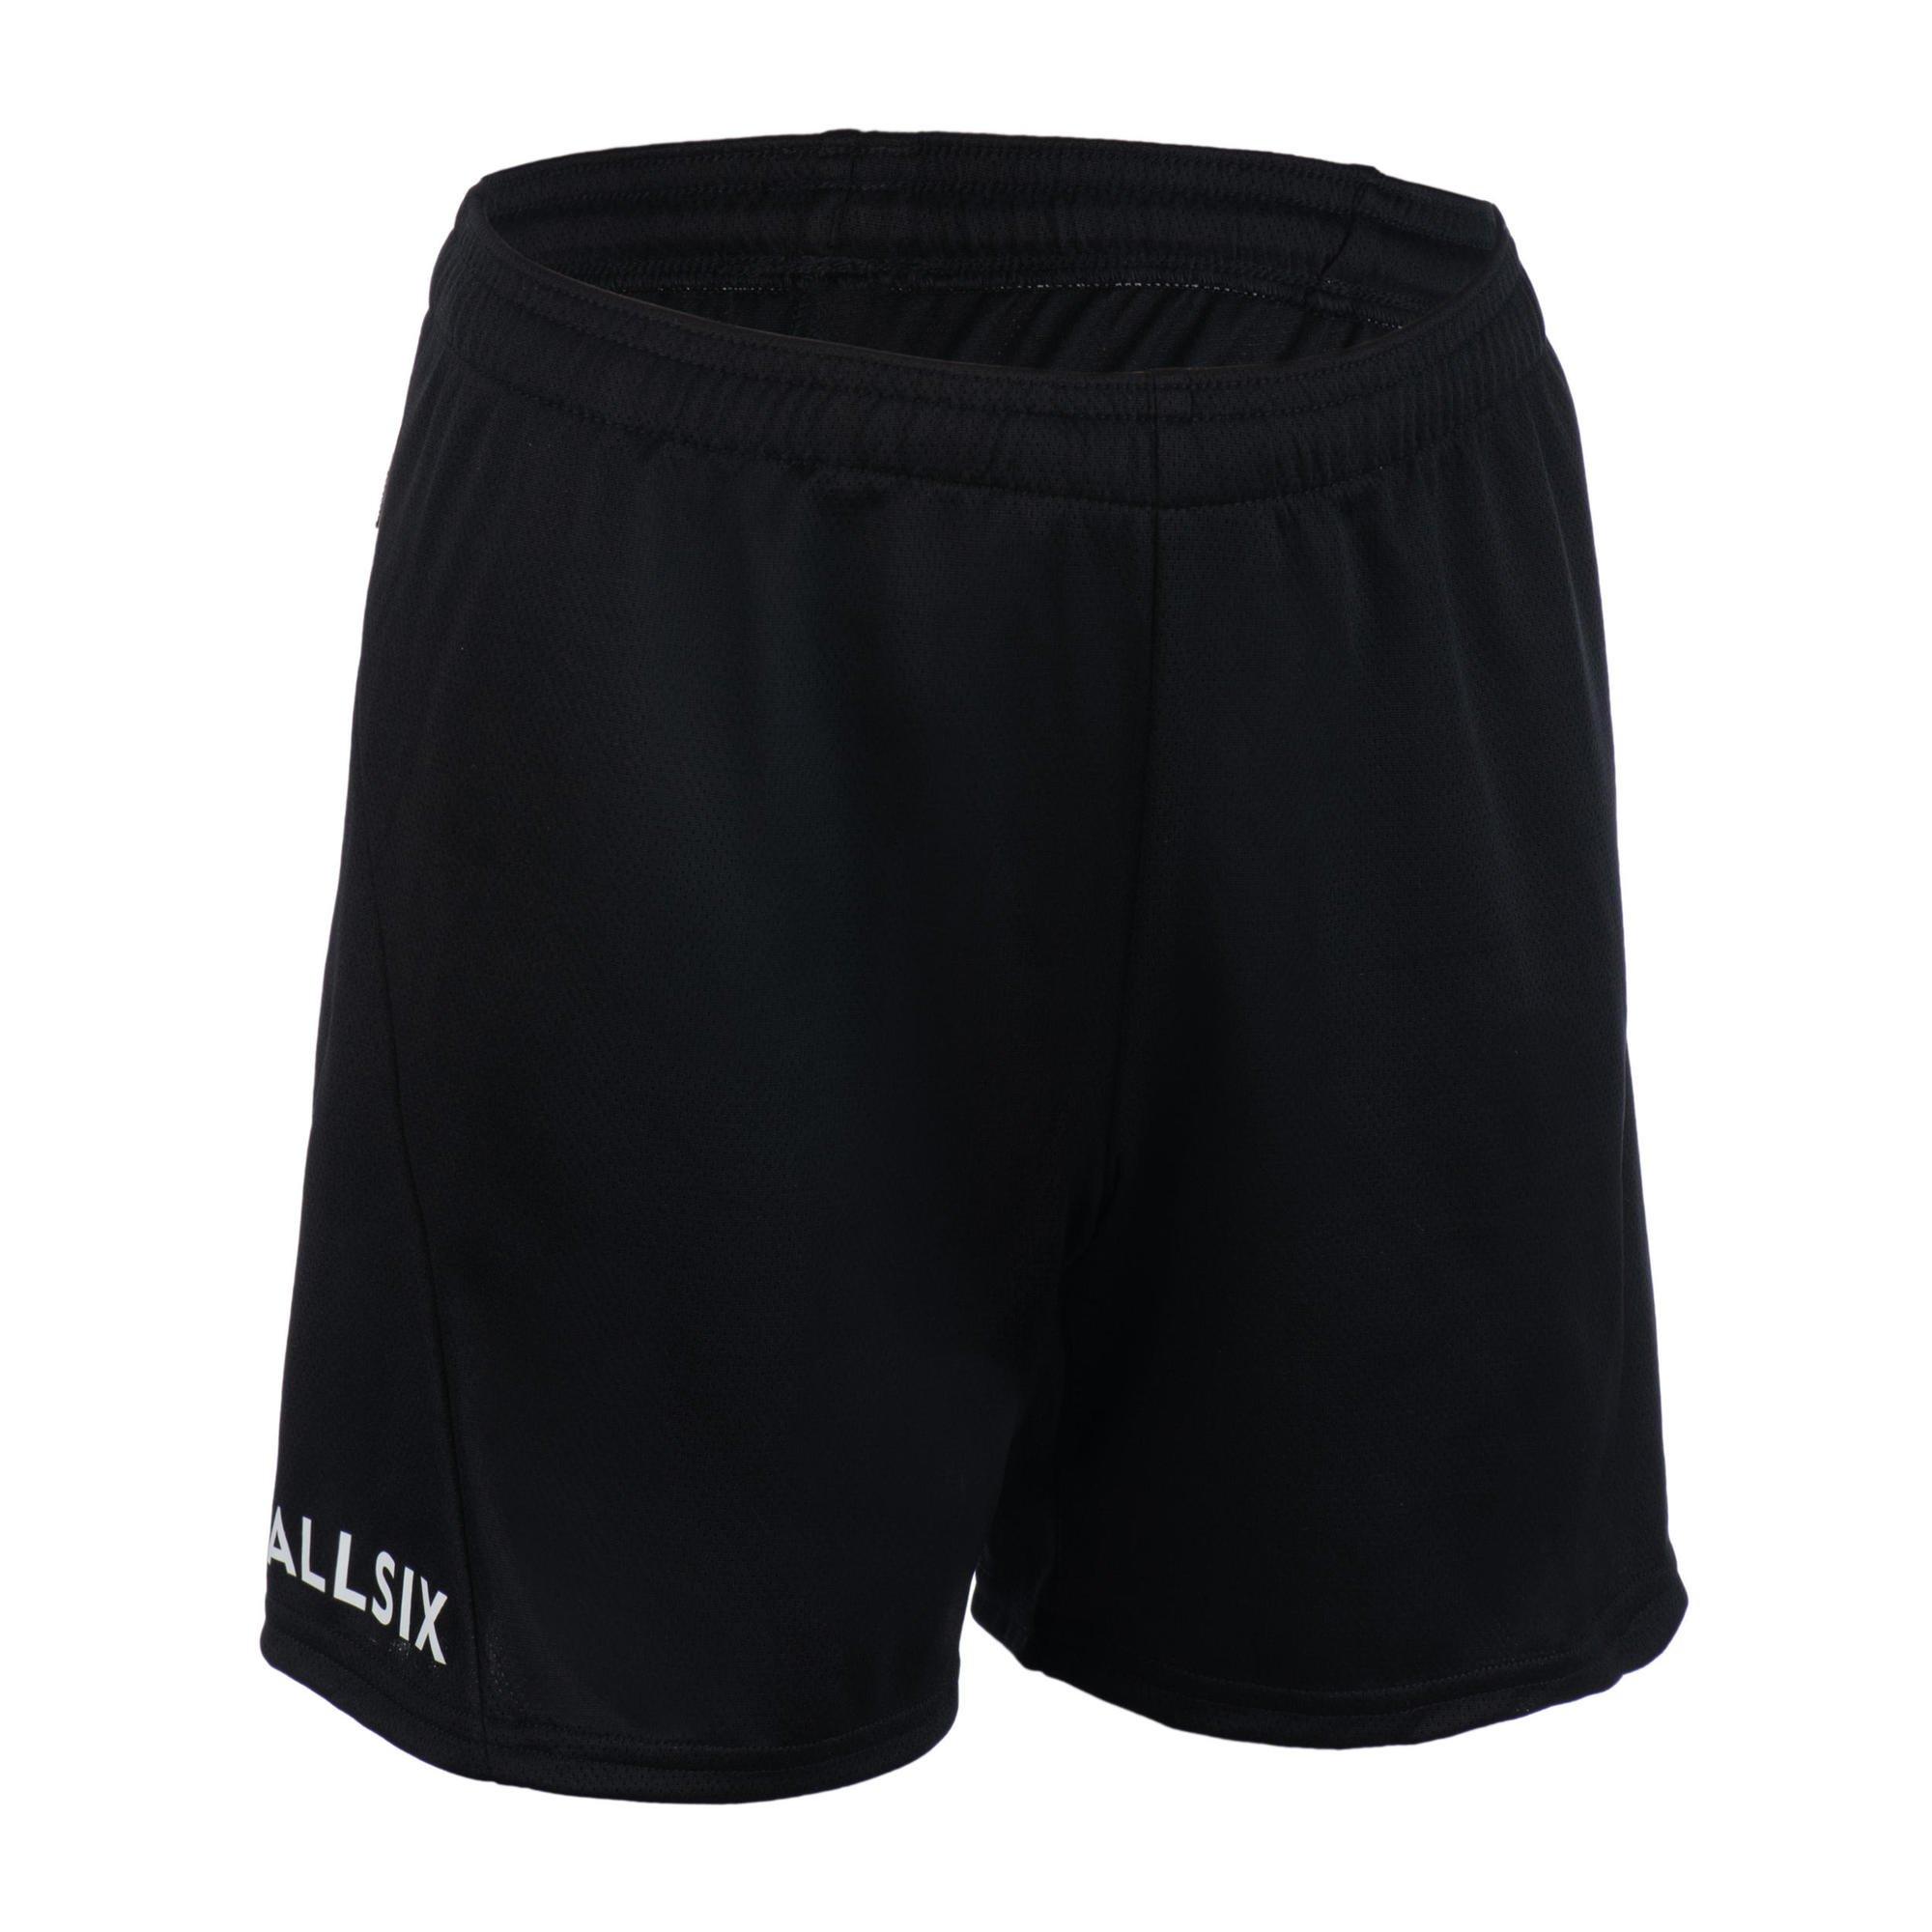 Волейбольные шорты Decathlon для тренировок Allsix, черный волейбольные шорты женские v100 черные allsix черный